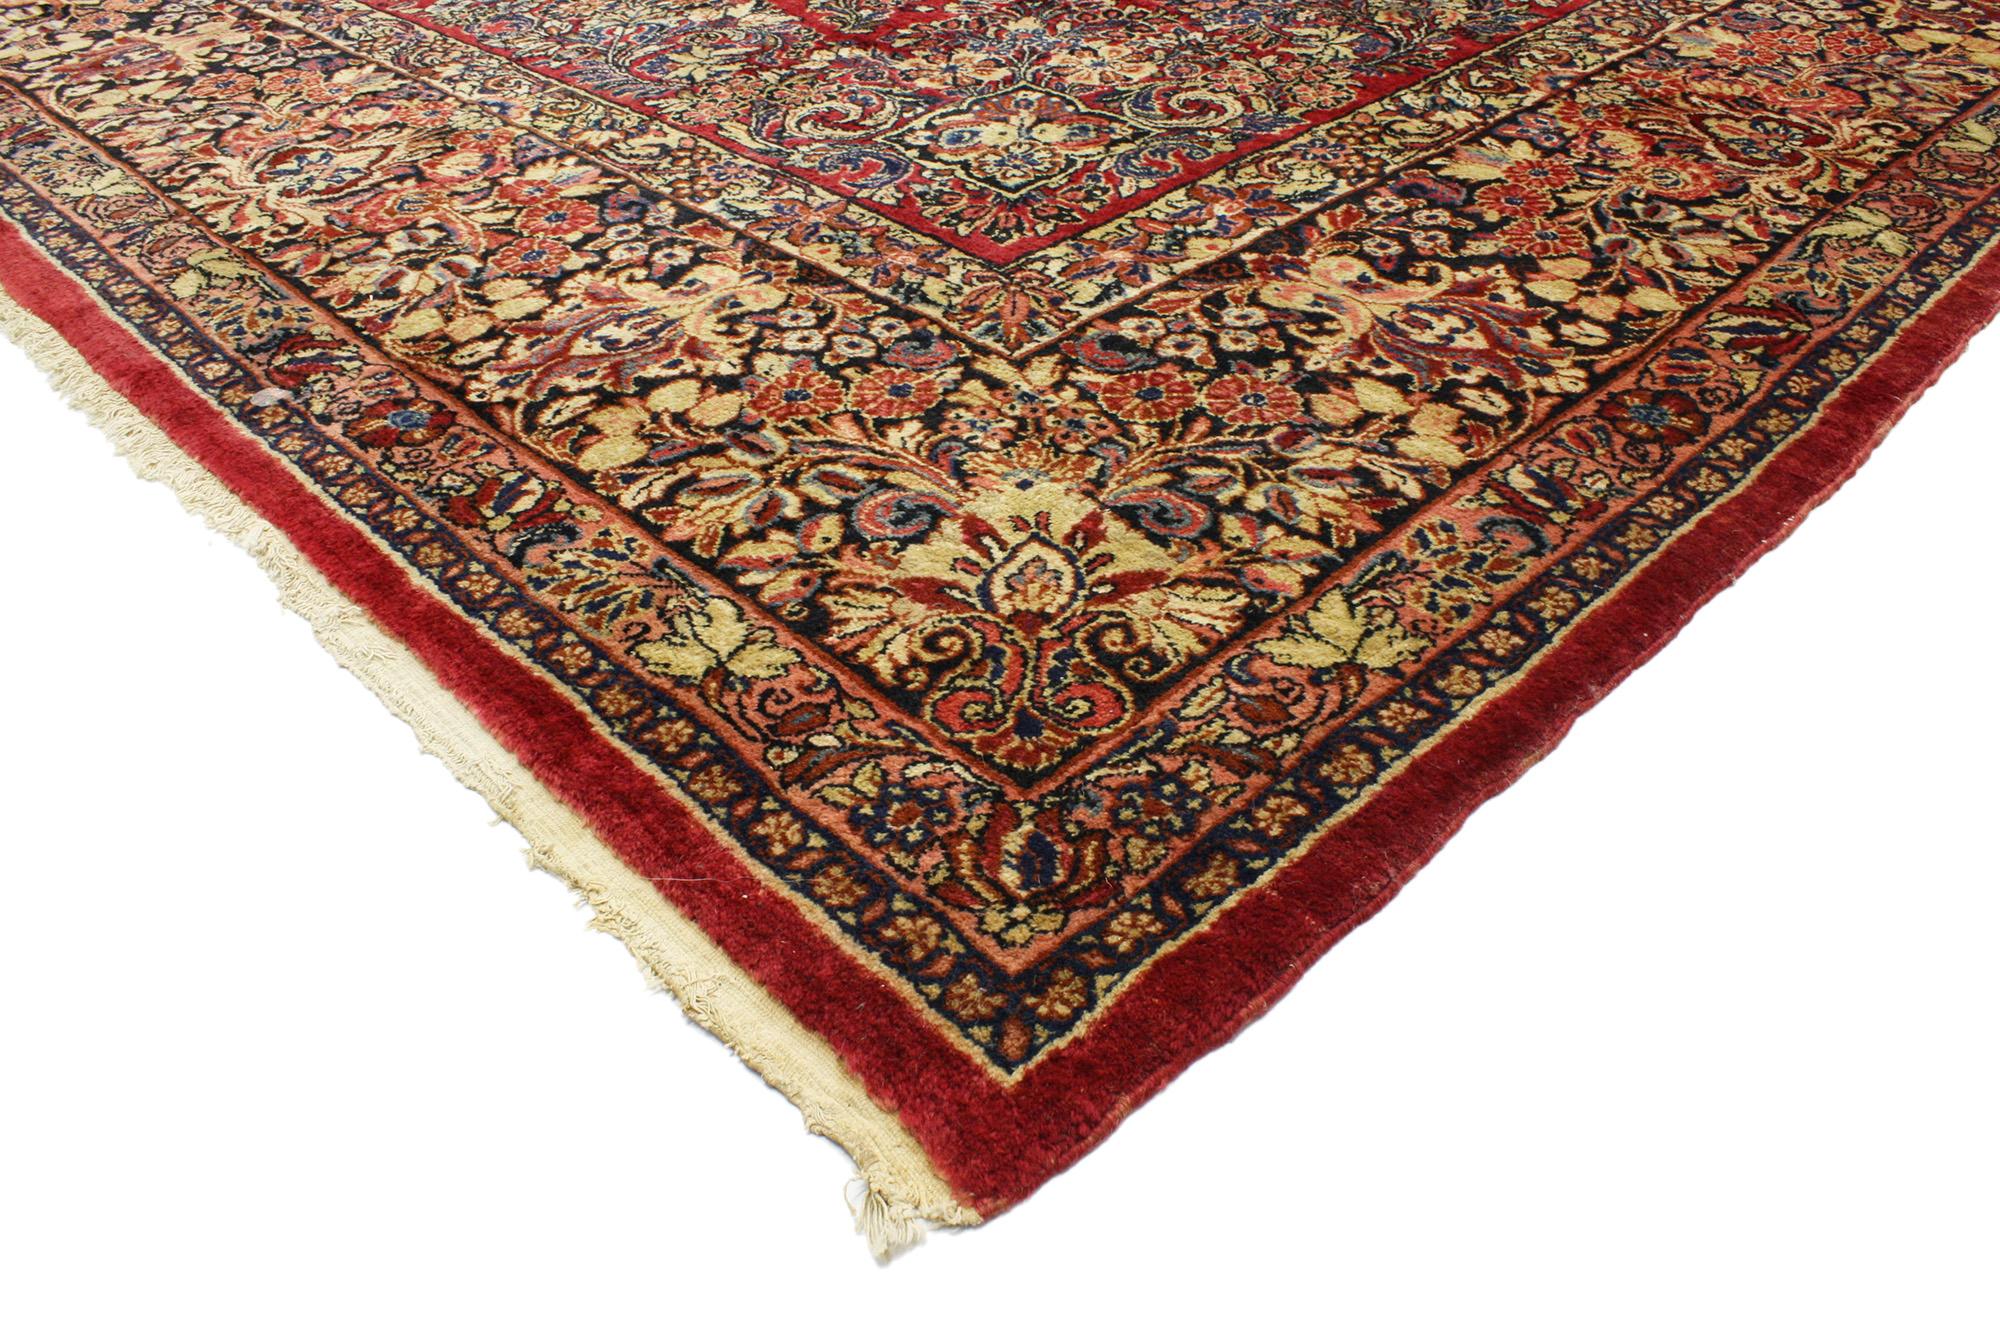 74960 Ancien tapis sarouk persan de style victorien 10'03 x 17'10. Avec ses motifs floraux intemporels et sa palette de couleurs traditionnelles, ce tapis sarouk persan antique en laine nouée à la main est une vision captivante de la beauté tissée.